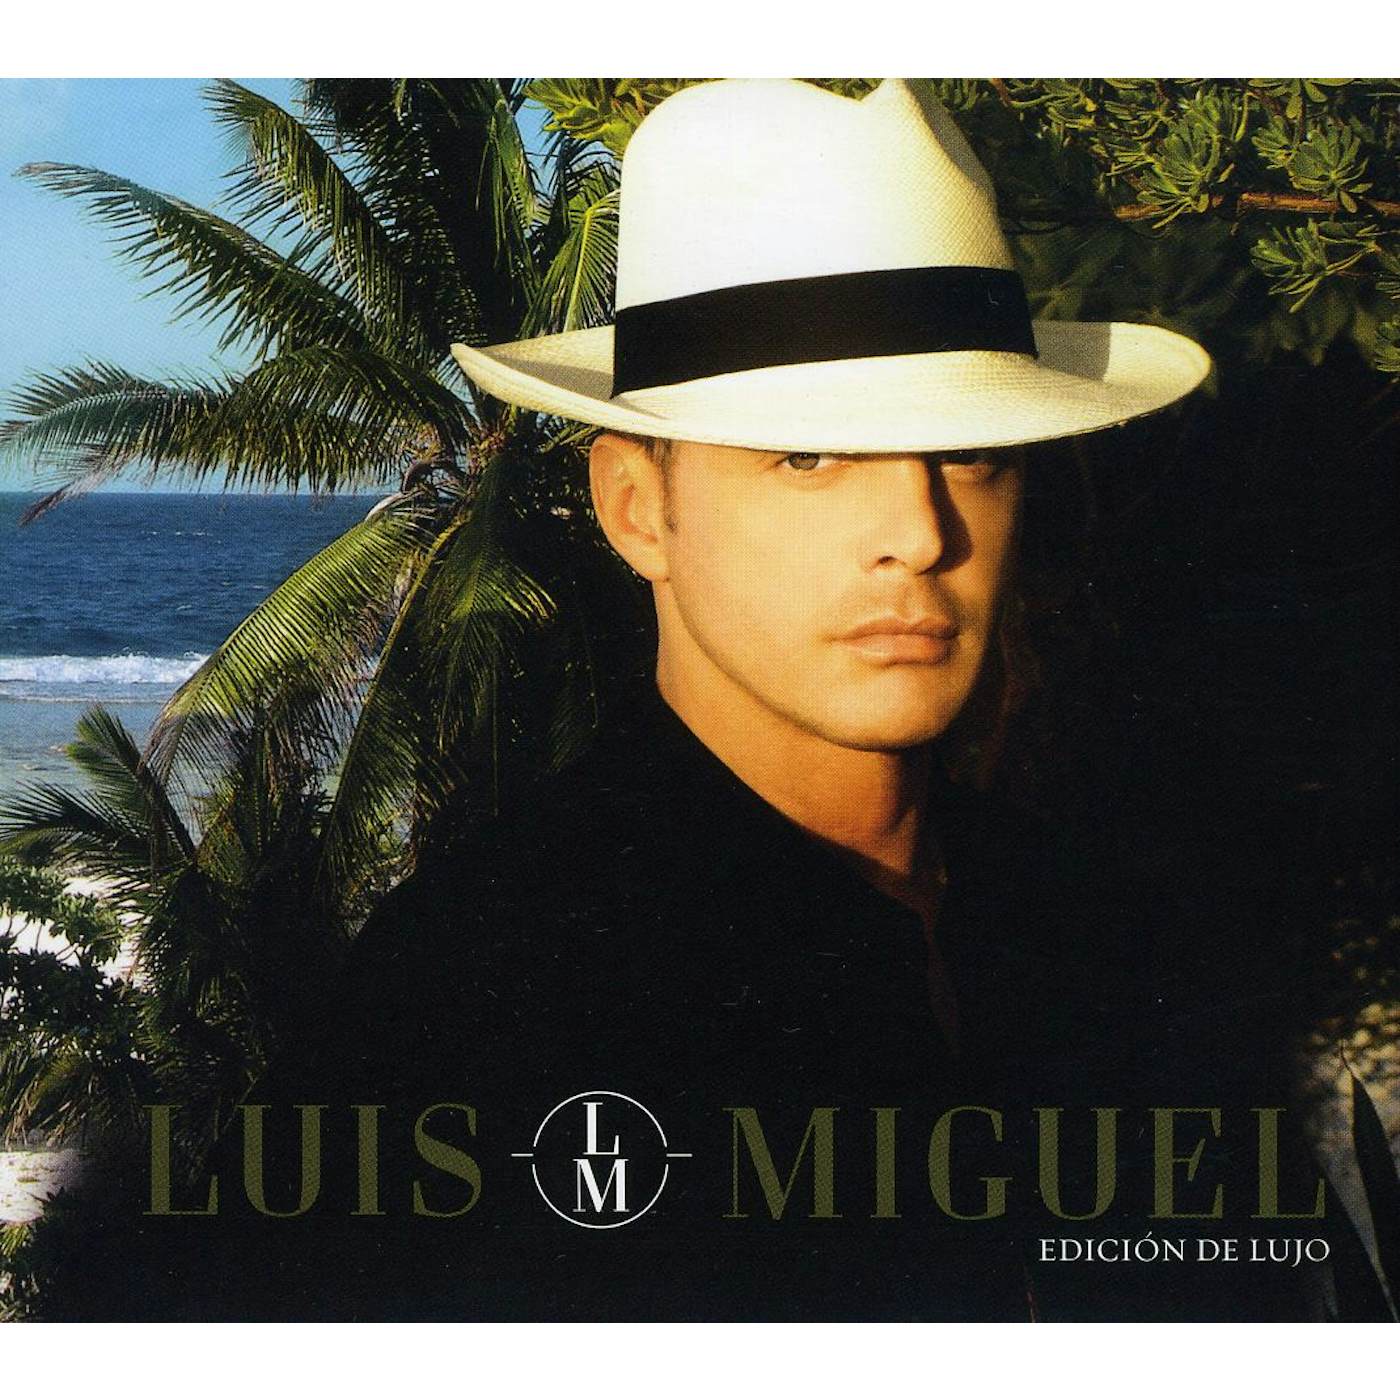 LUIS MIGUEL: EDICION DE LUJO CD